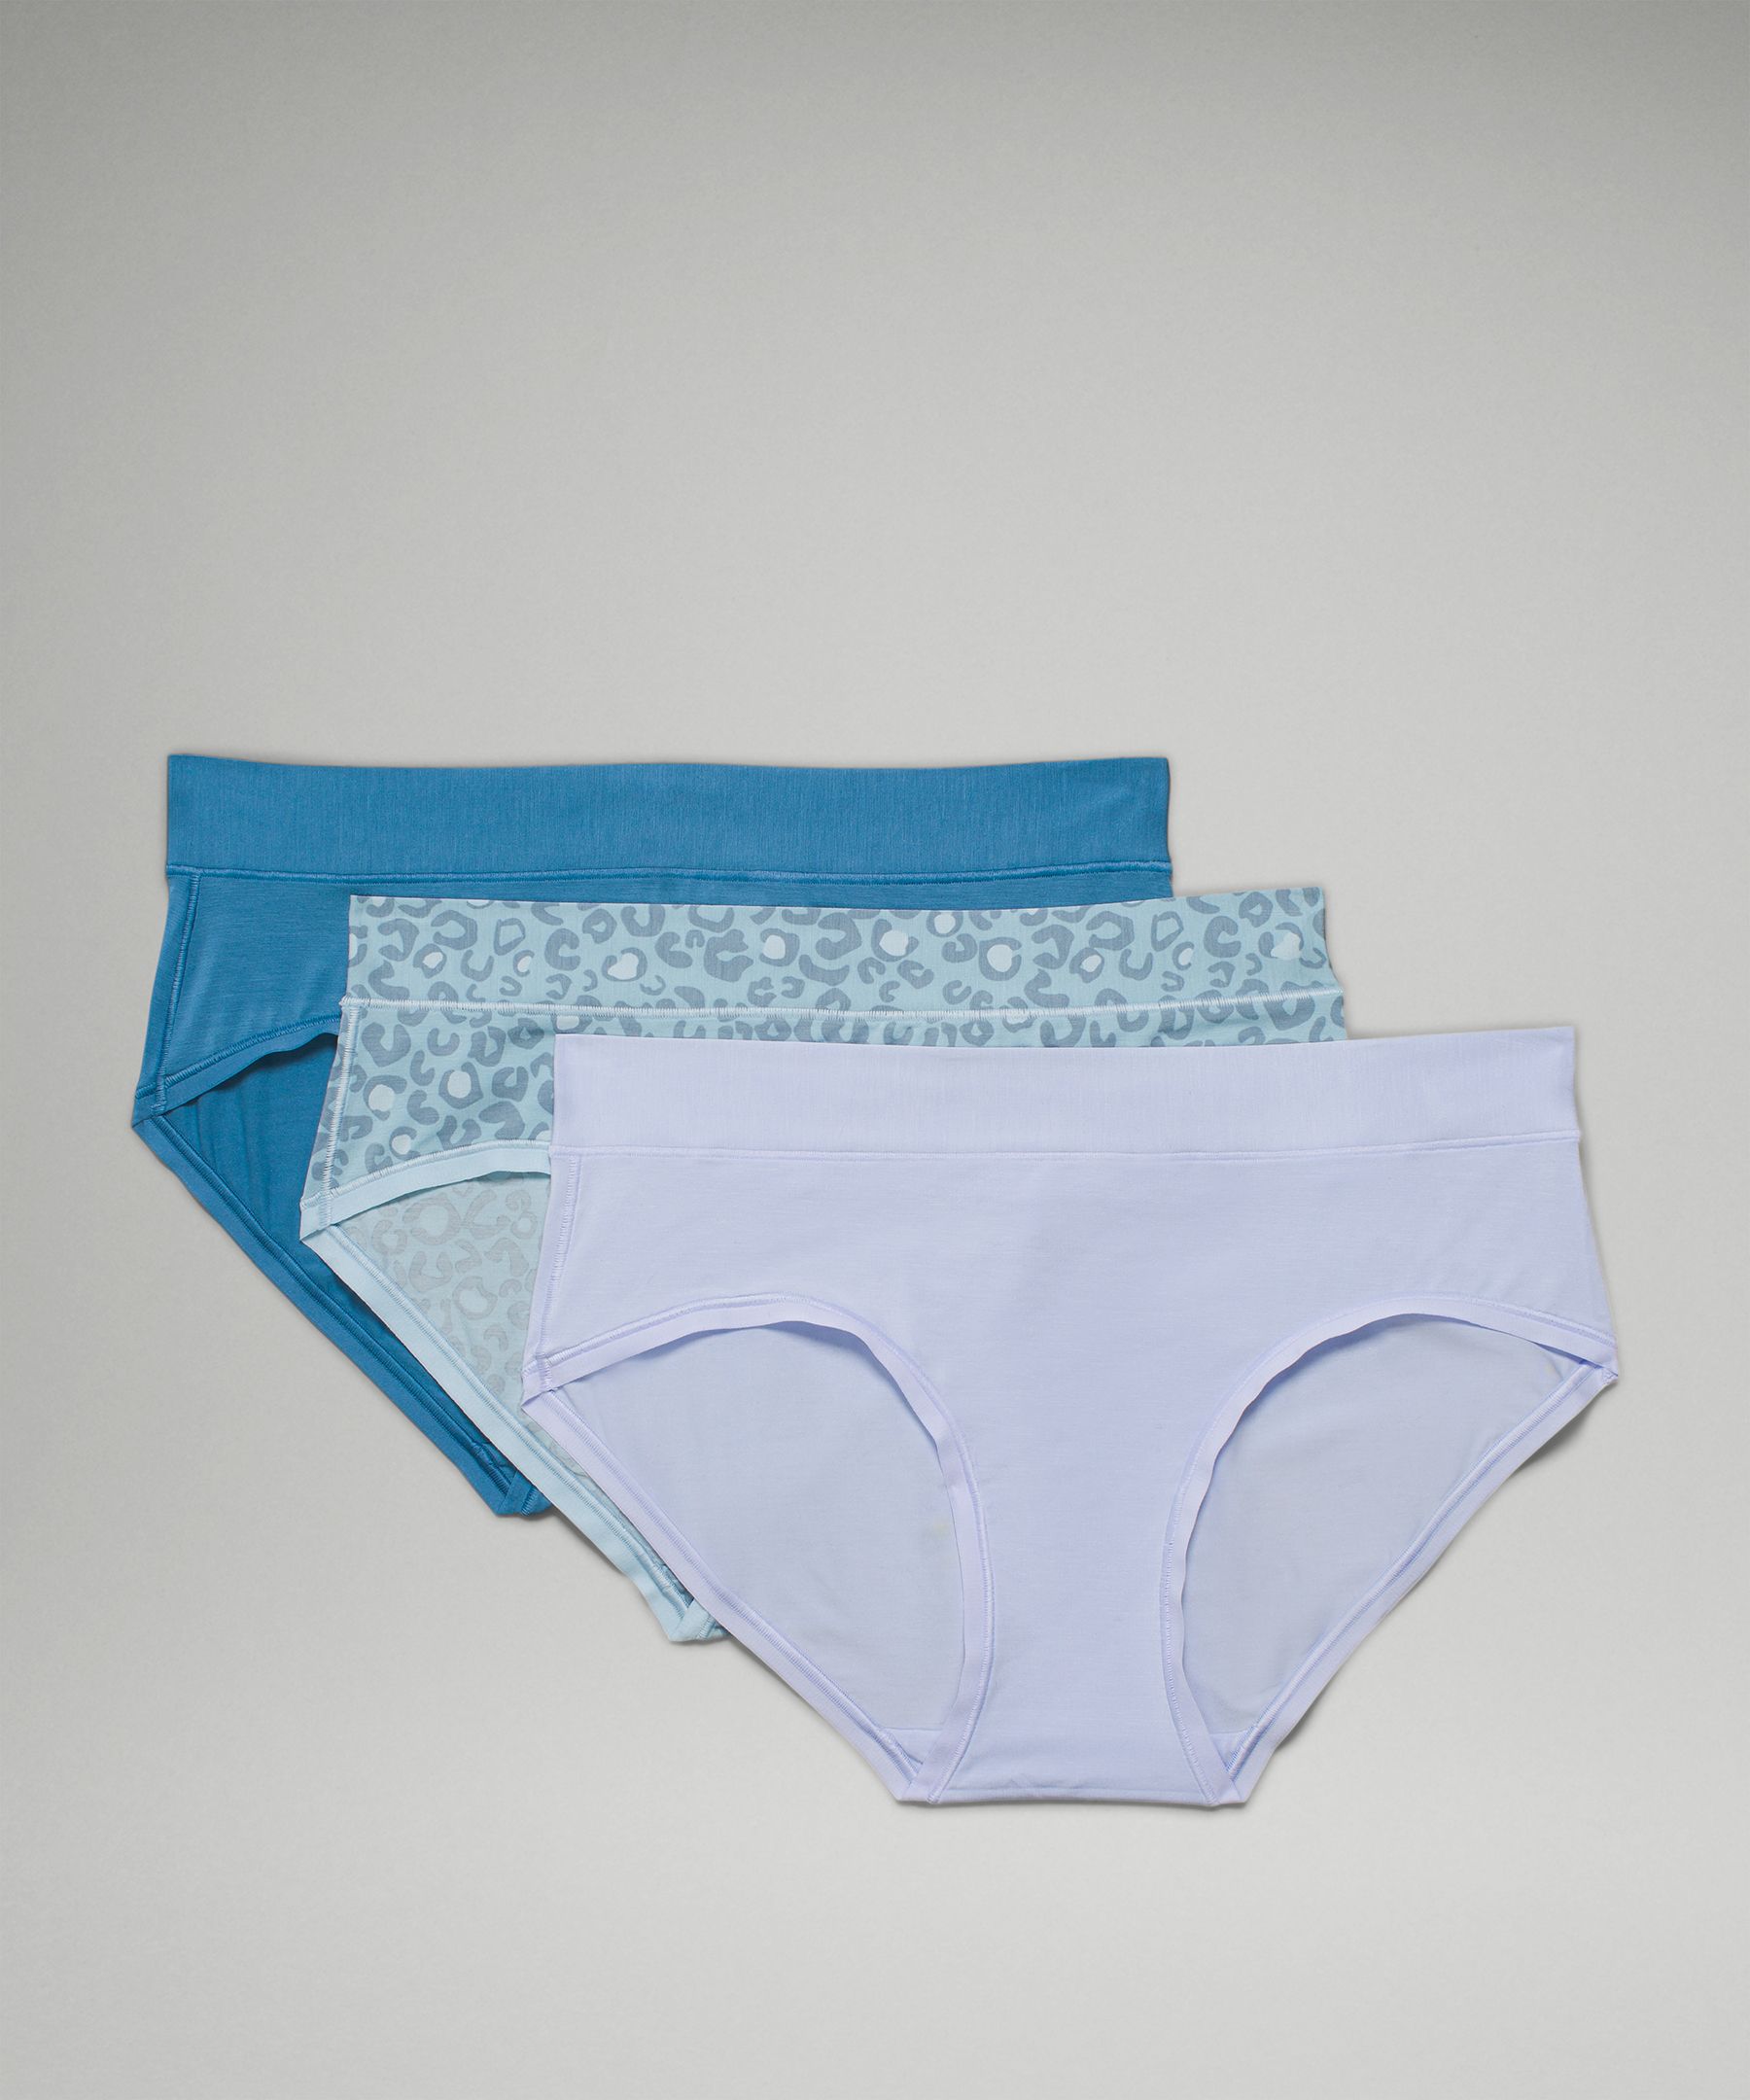 Lululemon Seamless Mid-Rise Bikini Underwear 3 Pack - Pastel Blue